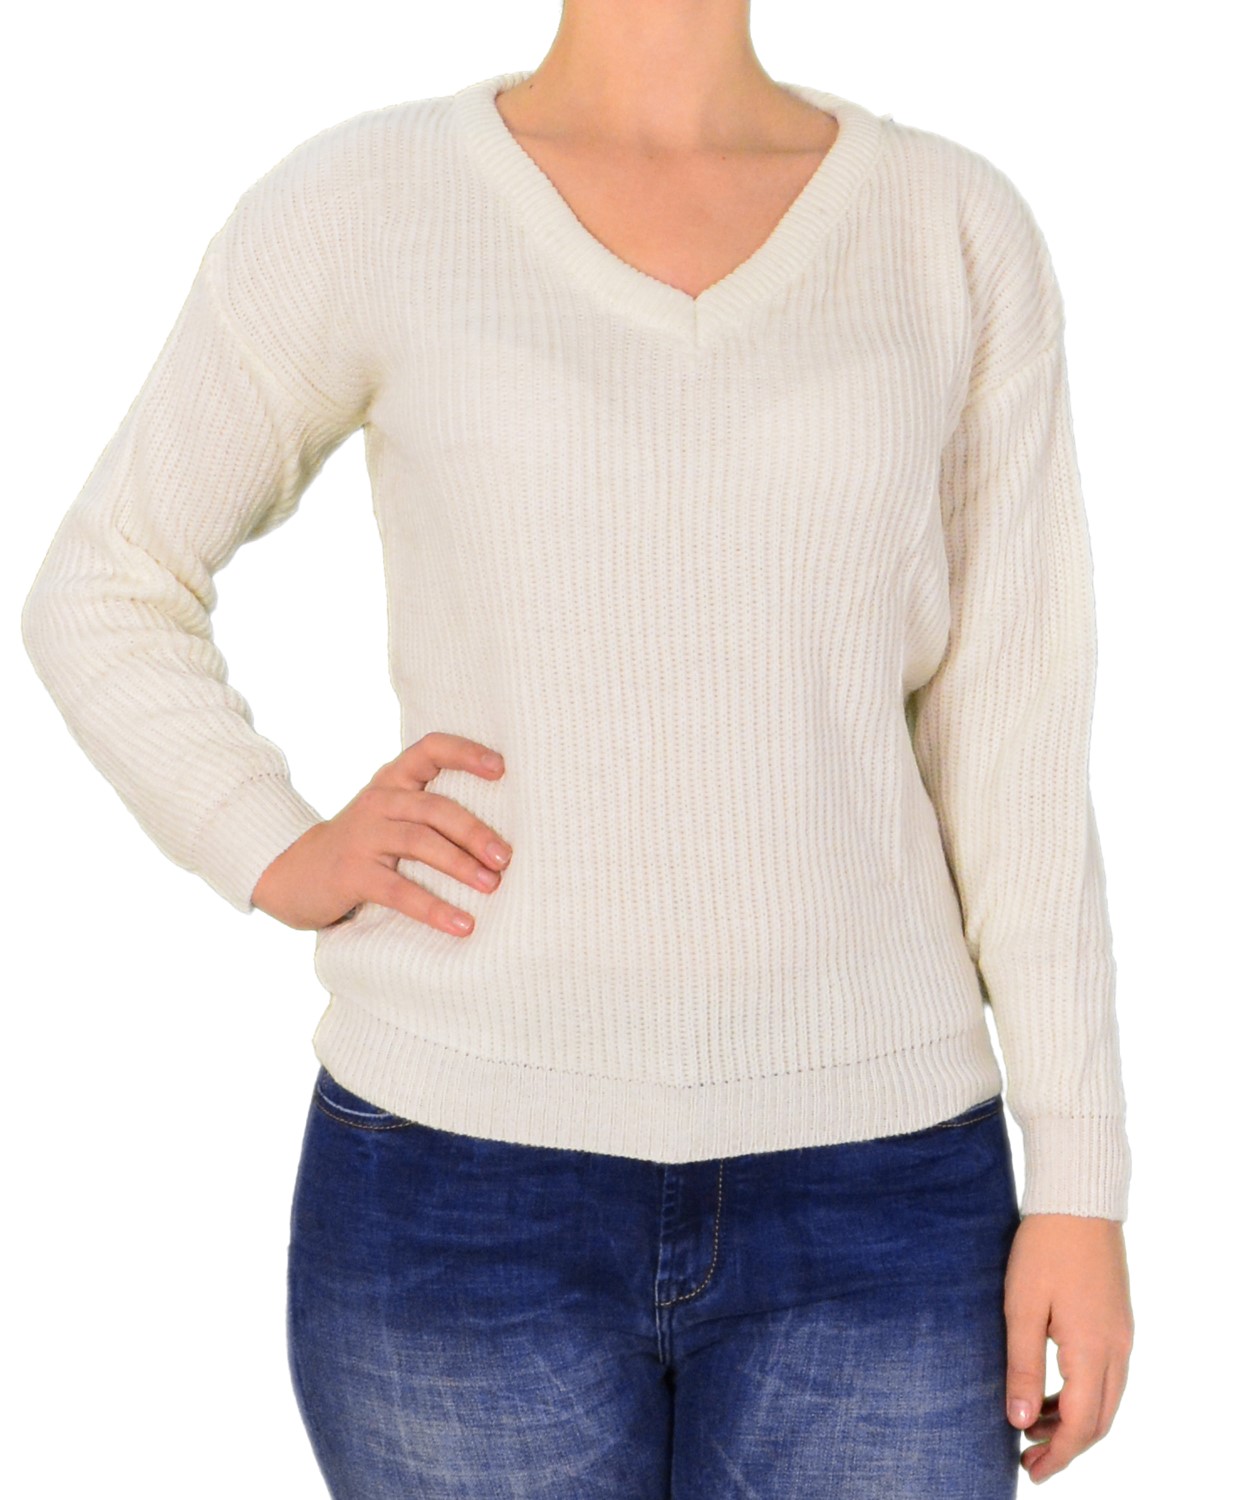 Γυναικείο μακρυμάνικο πλεκτό μπλουζάκι λευκό 30196